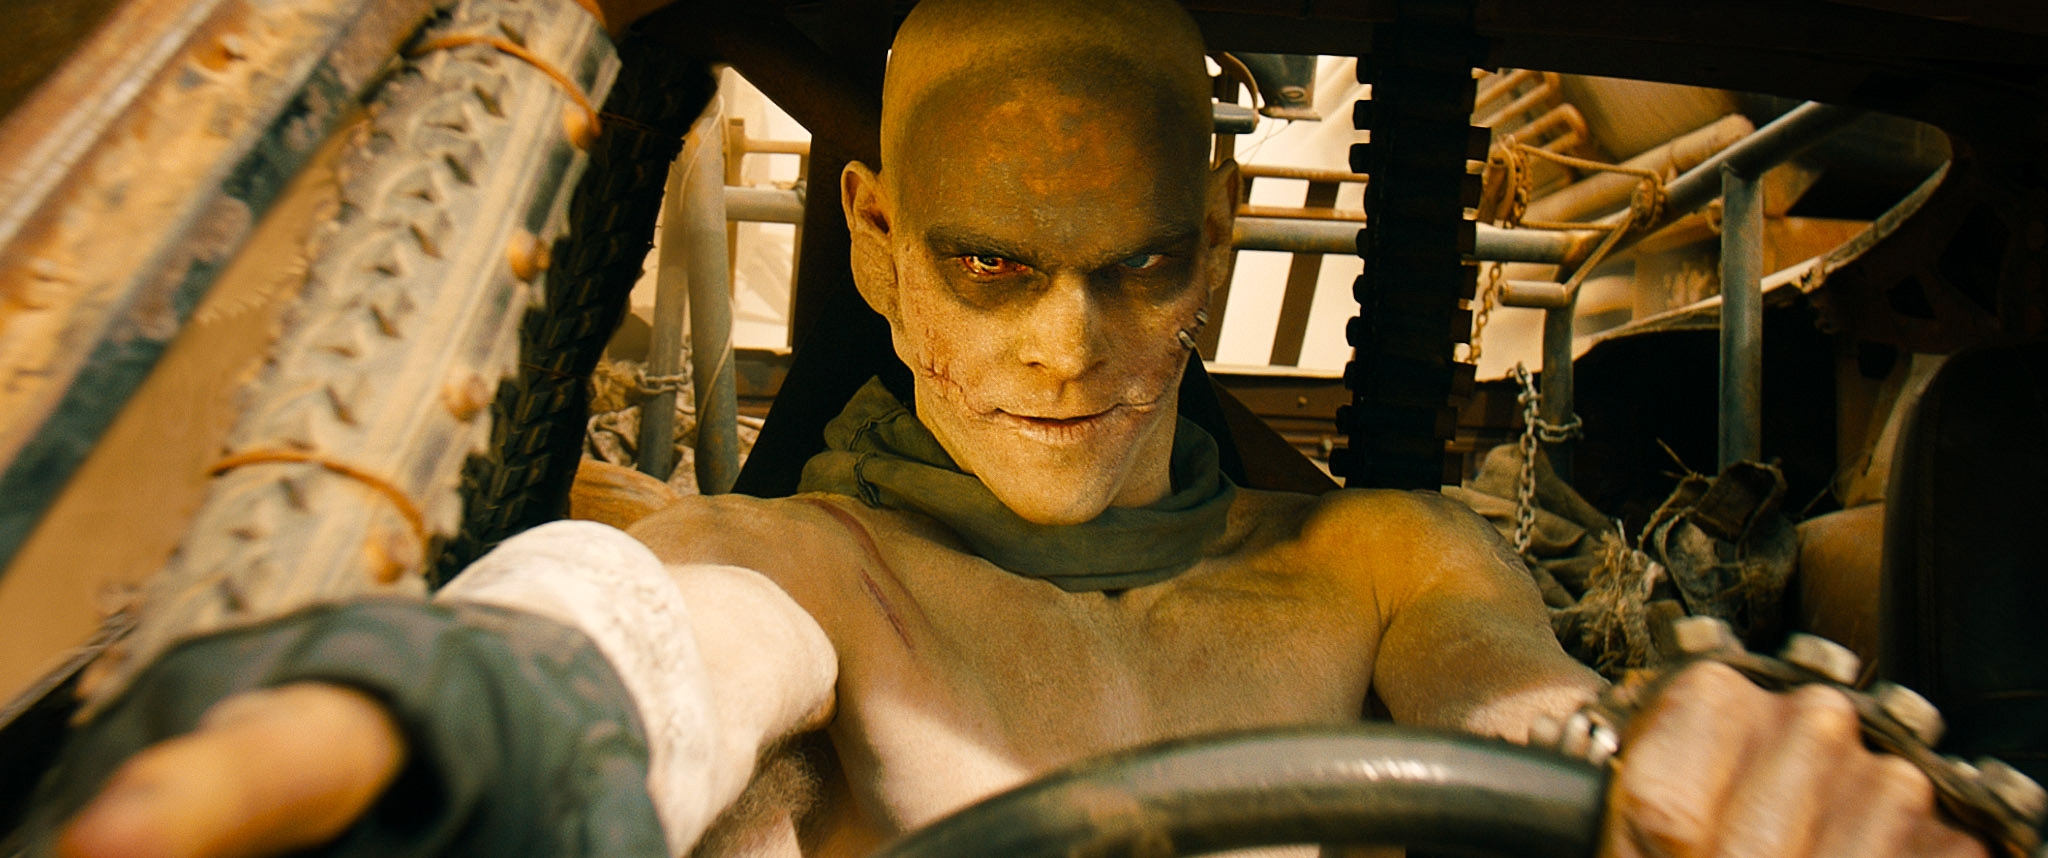 Image du film Mad Max : Fury Road 187c23ad-b43a-46ed-b19b-366c19ab9366